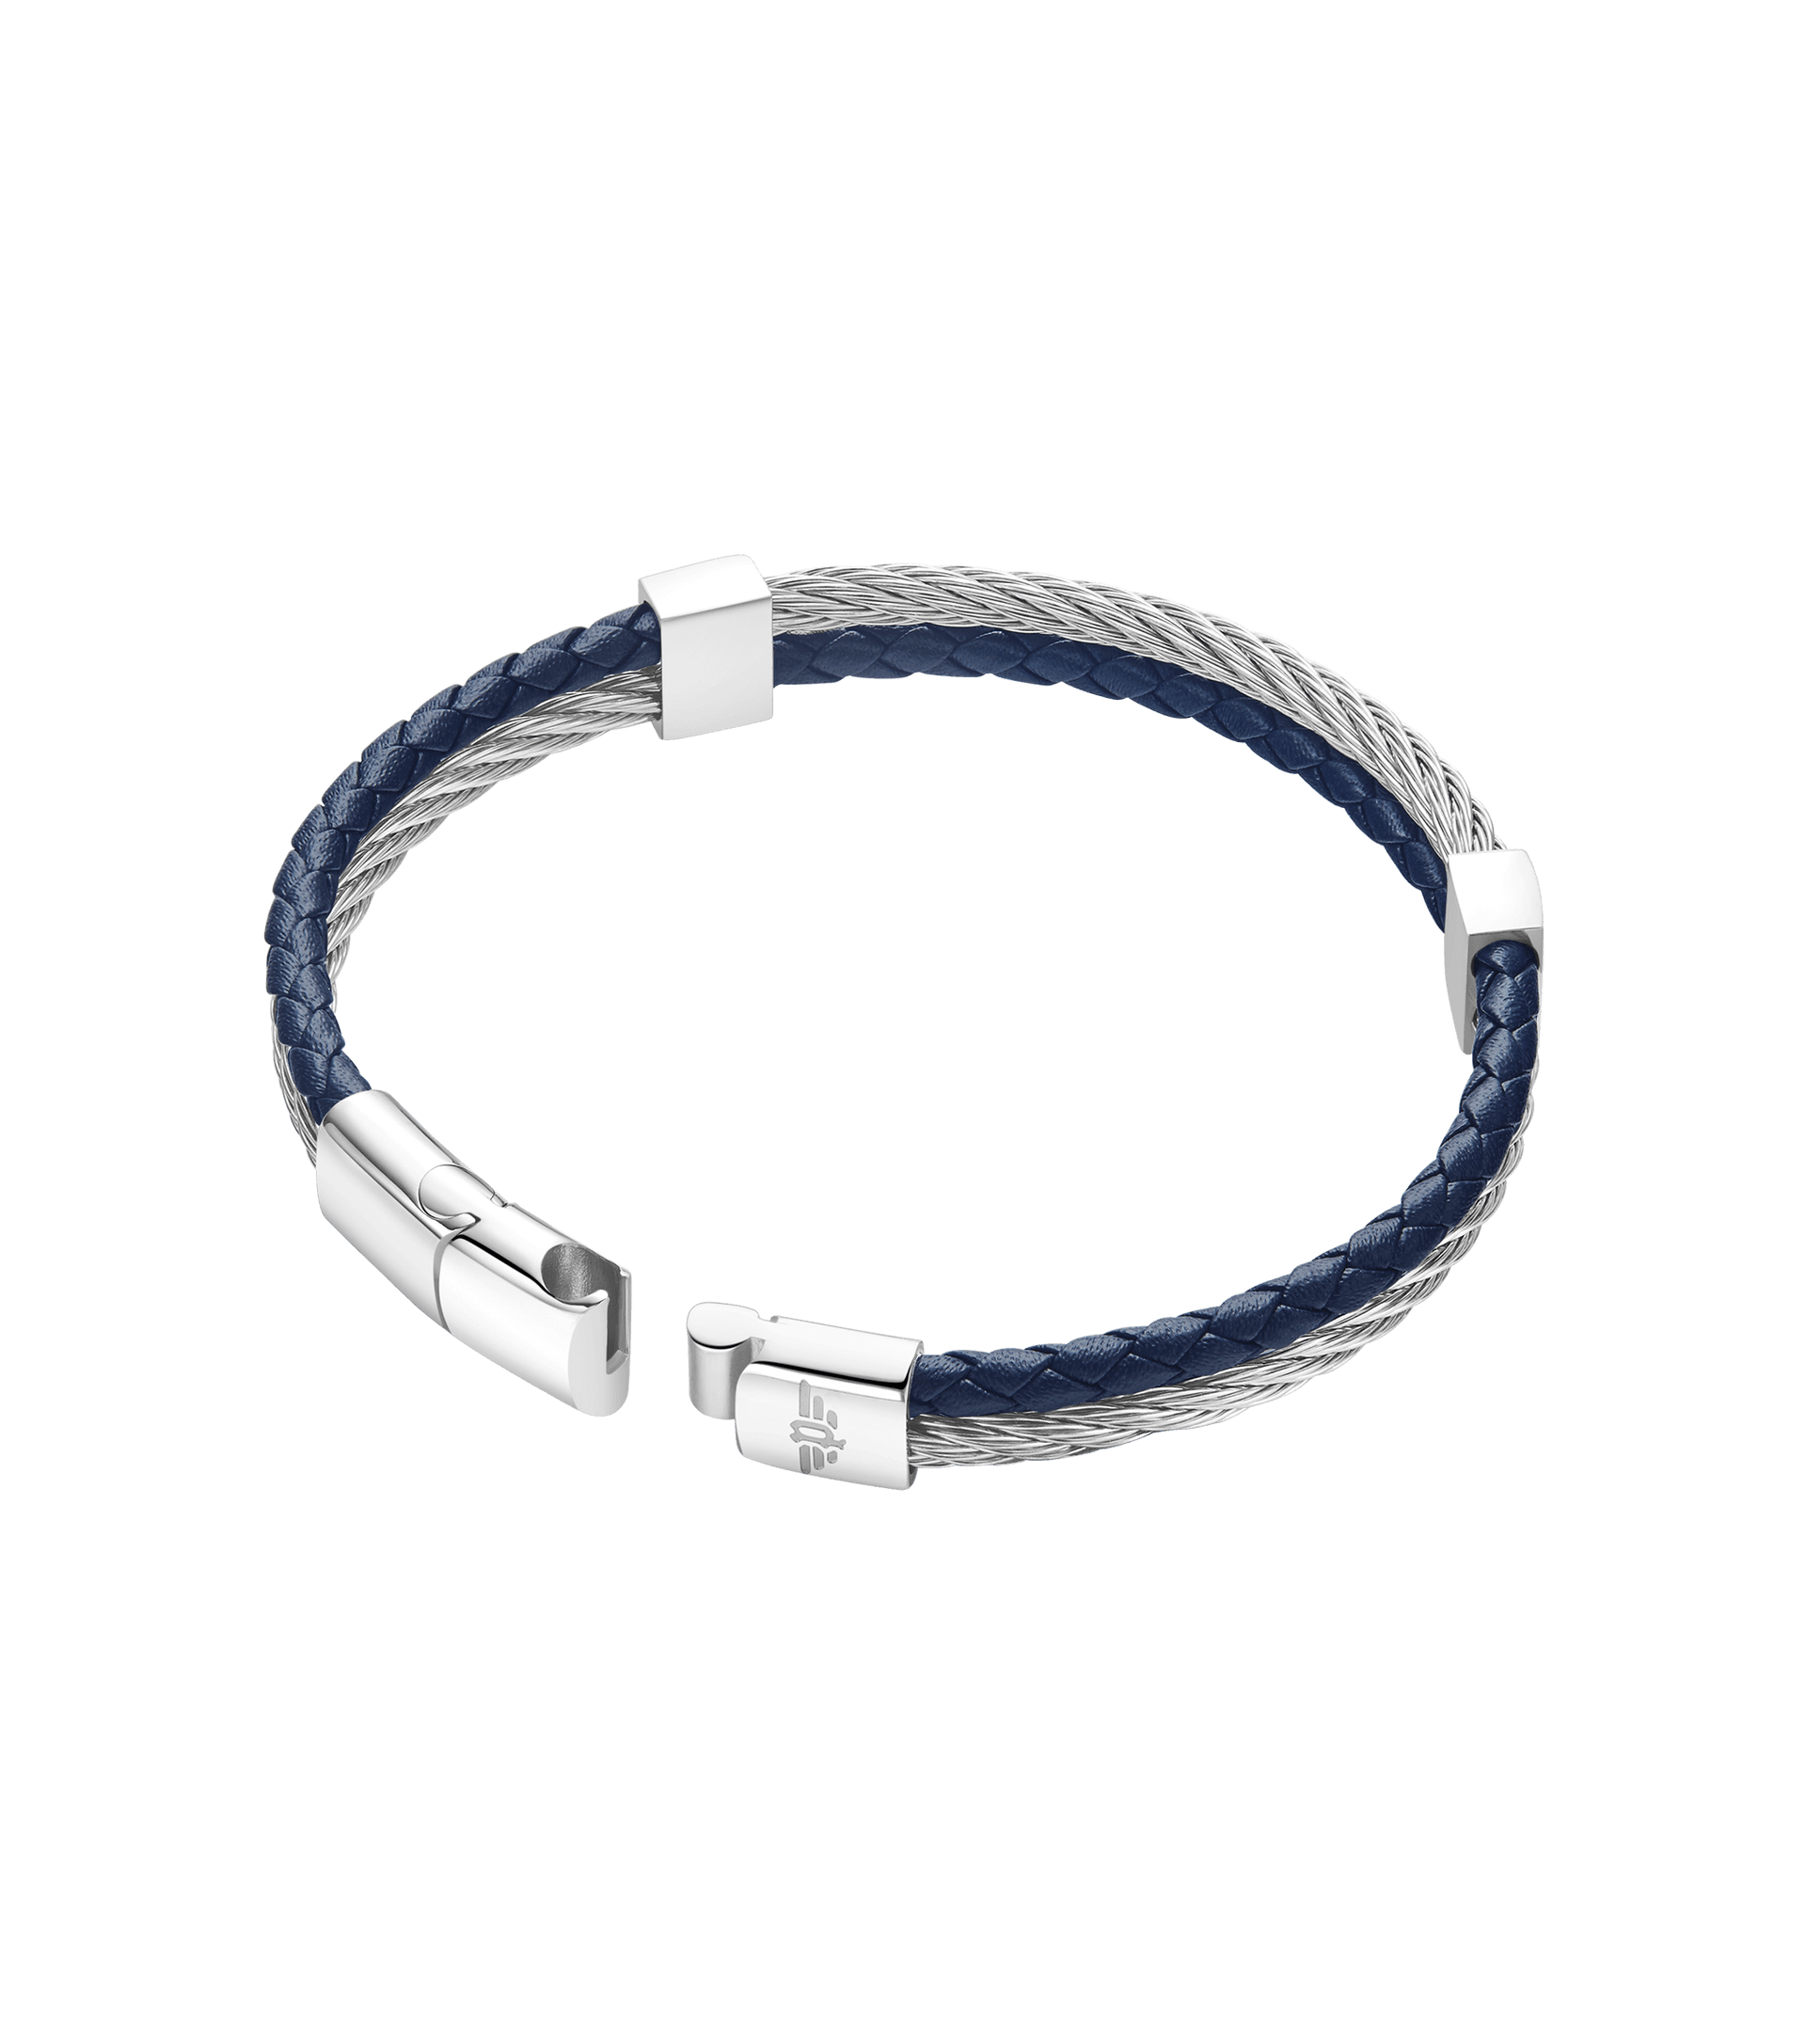 Police jewels - Hardware Bracelet Police For Men PEJGB2119601